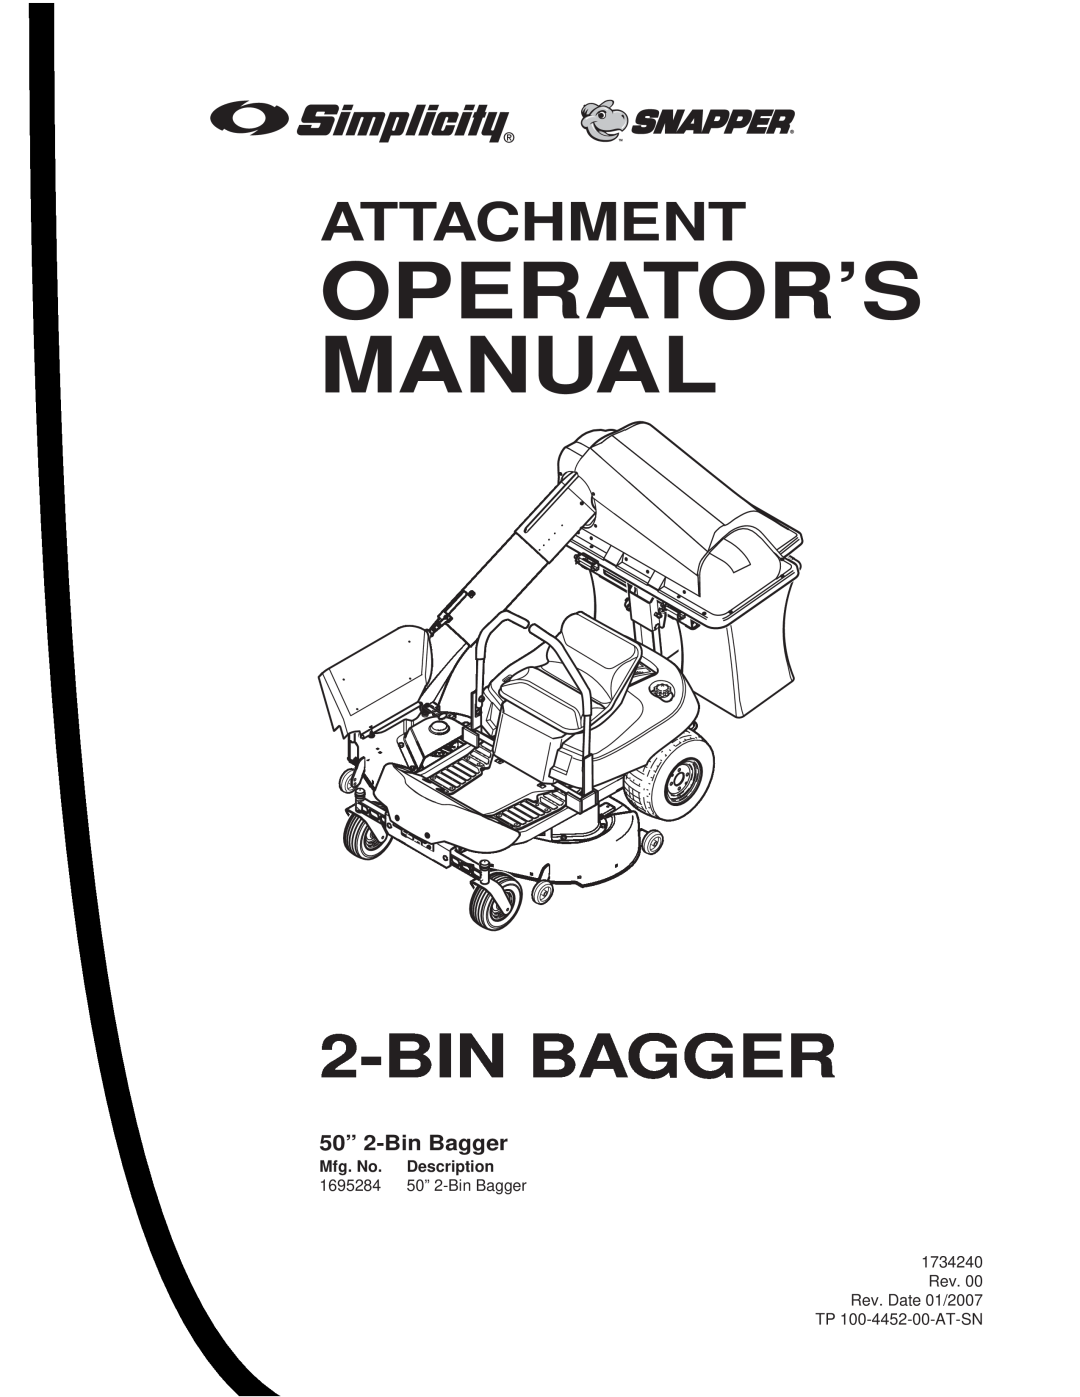 Briggs & Stratton manual Operator’S Manual, Binbagger, Attachment, 1695284 50” 2-BinBagger, TP 100-4452-00-AT-SN 